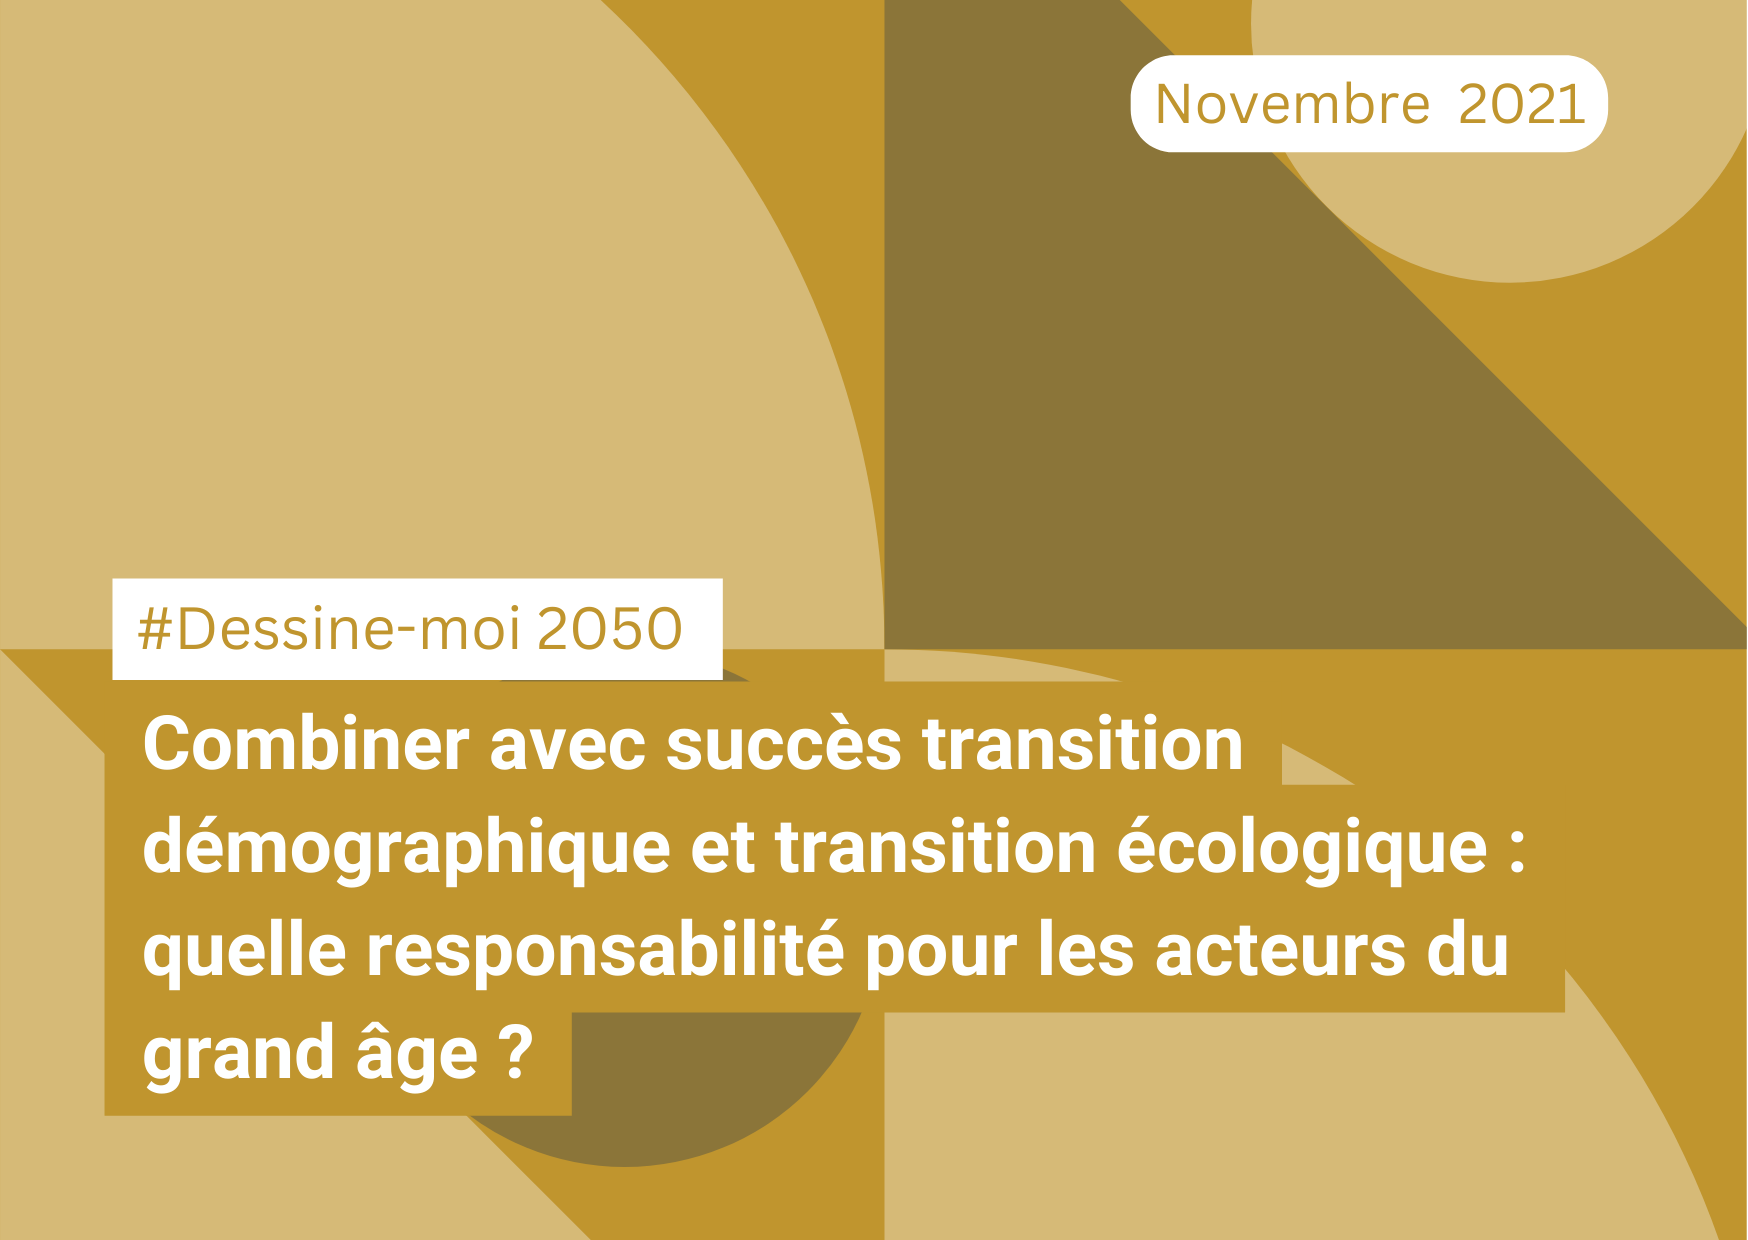 "Combiner avec succès transition démographique et transition écologique : quelle responsabilité pour les acteurs du grand-âge ?" #DessineMoi2050 (23/11/21)